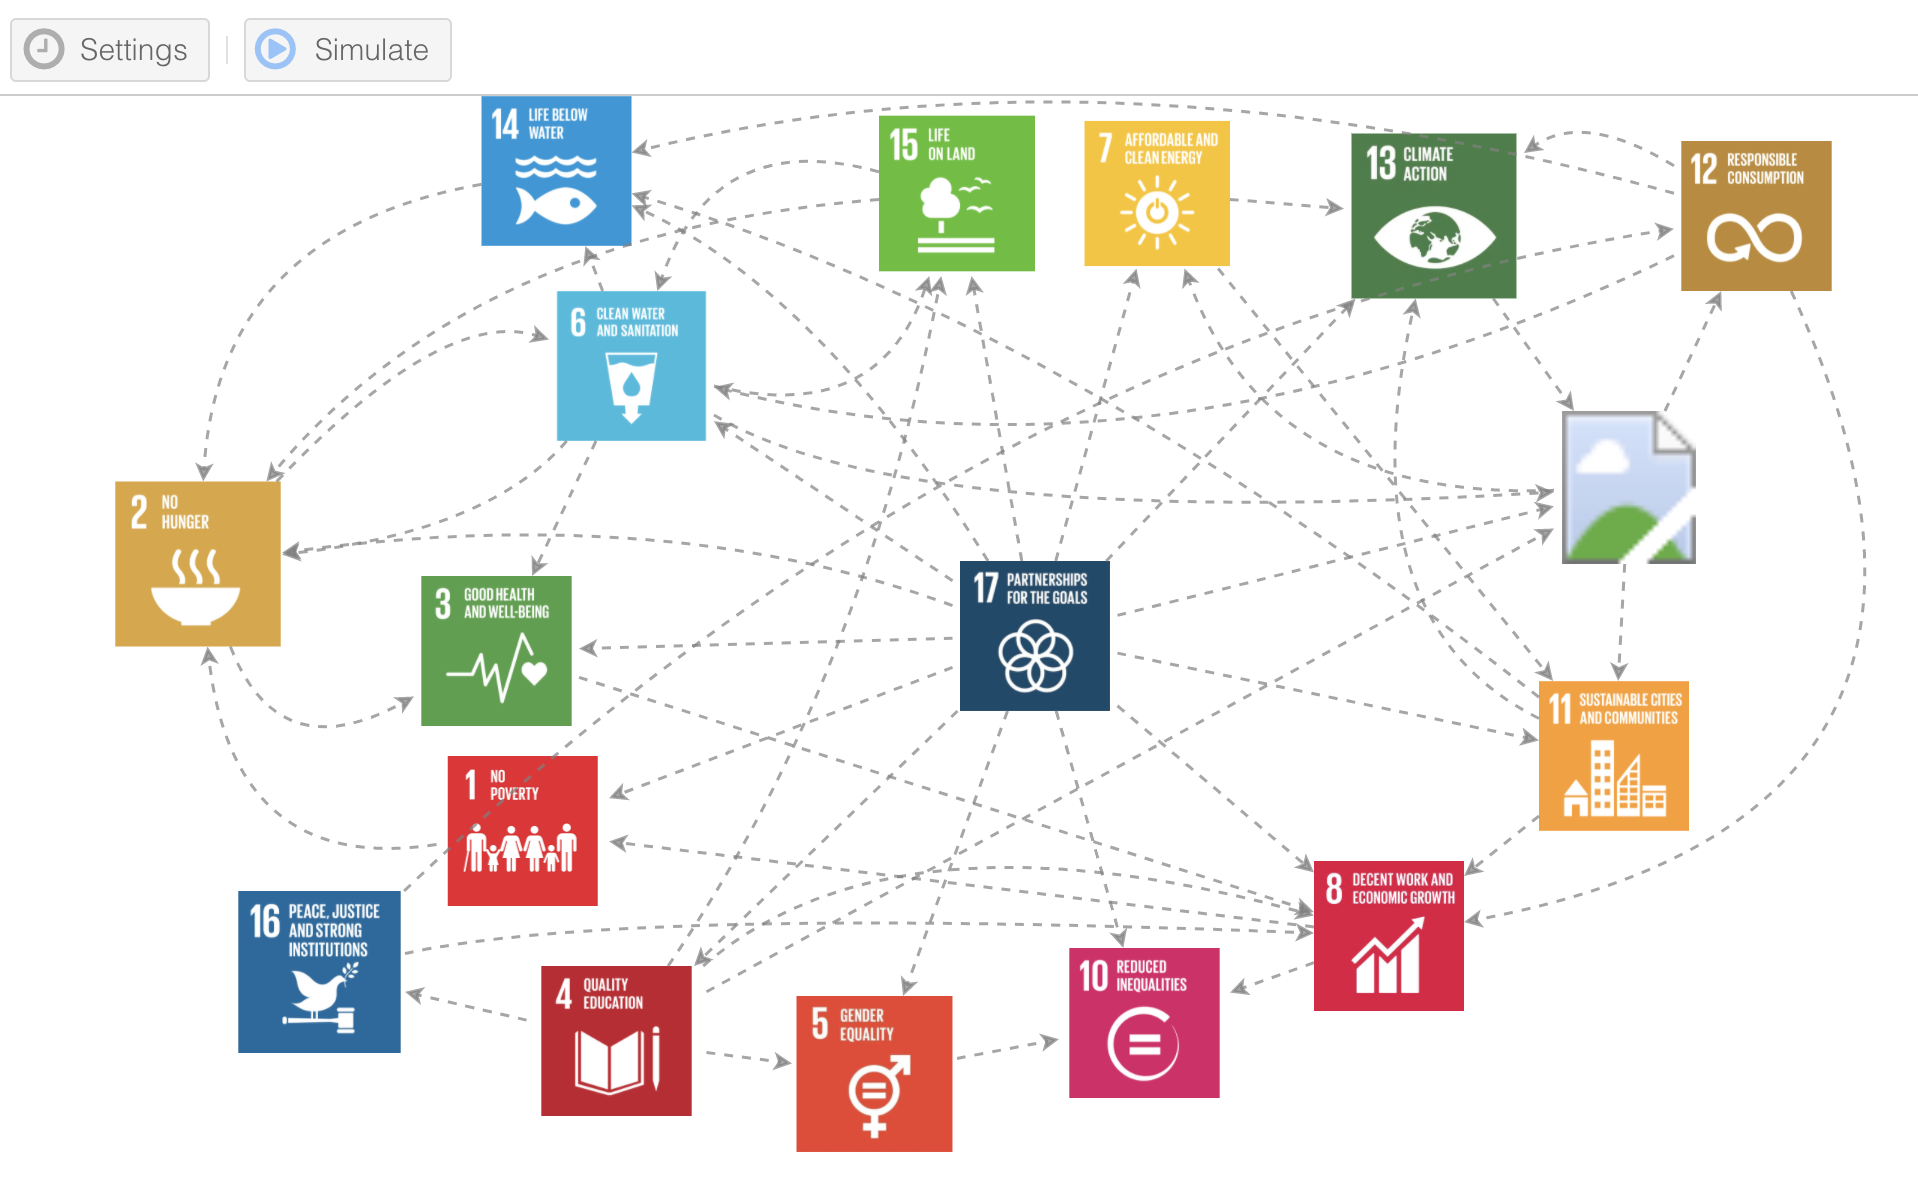 可视化可持续发展目标之间的联系。(来源:罗伯特·斯蒂尔)